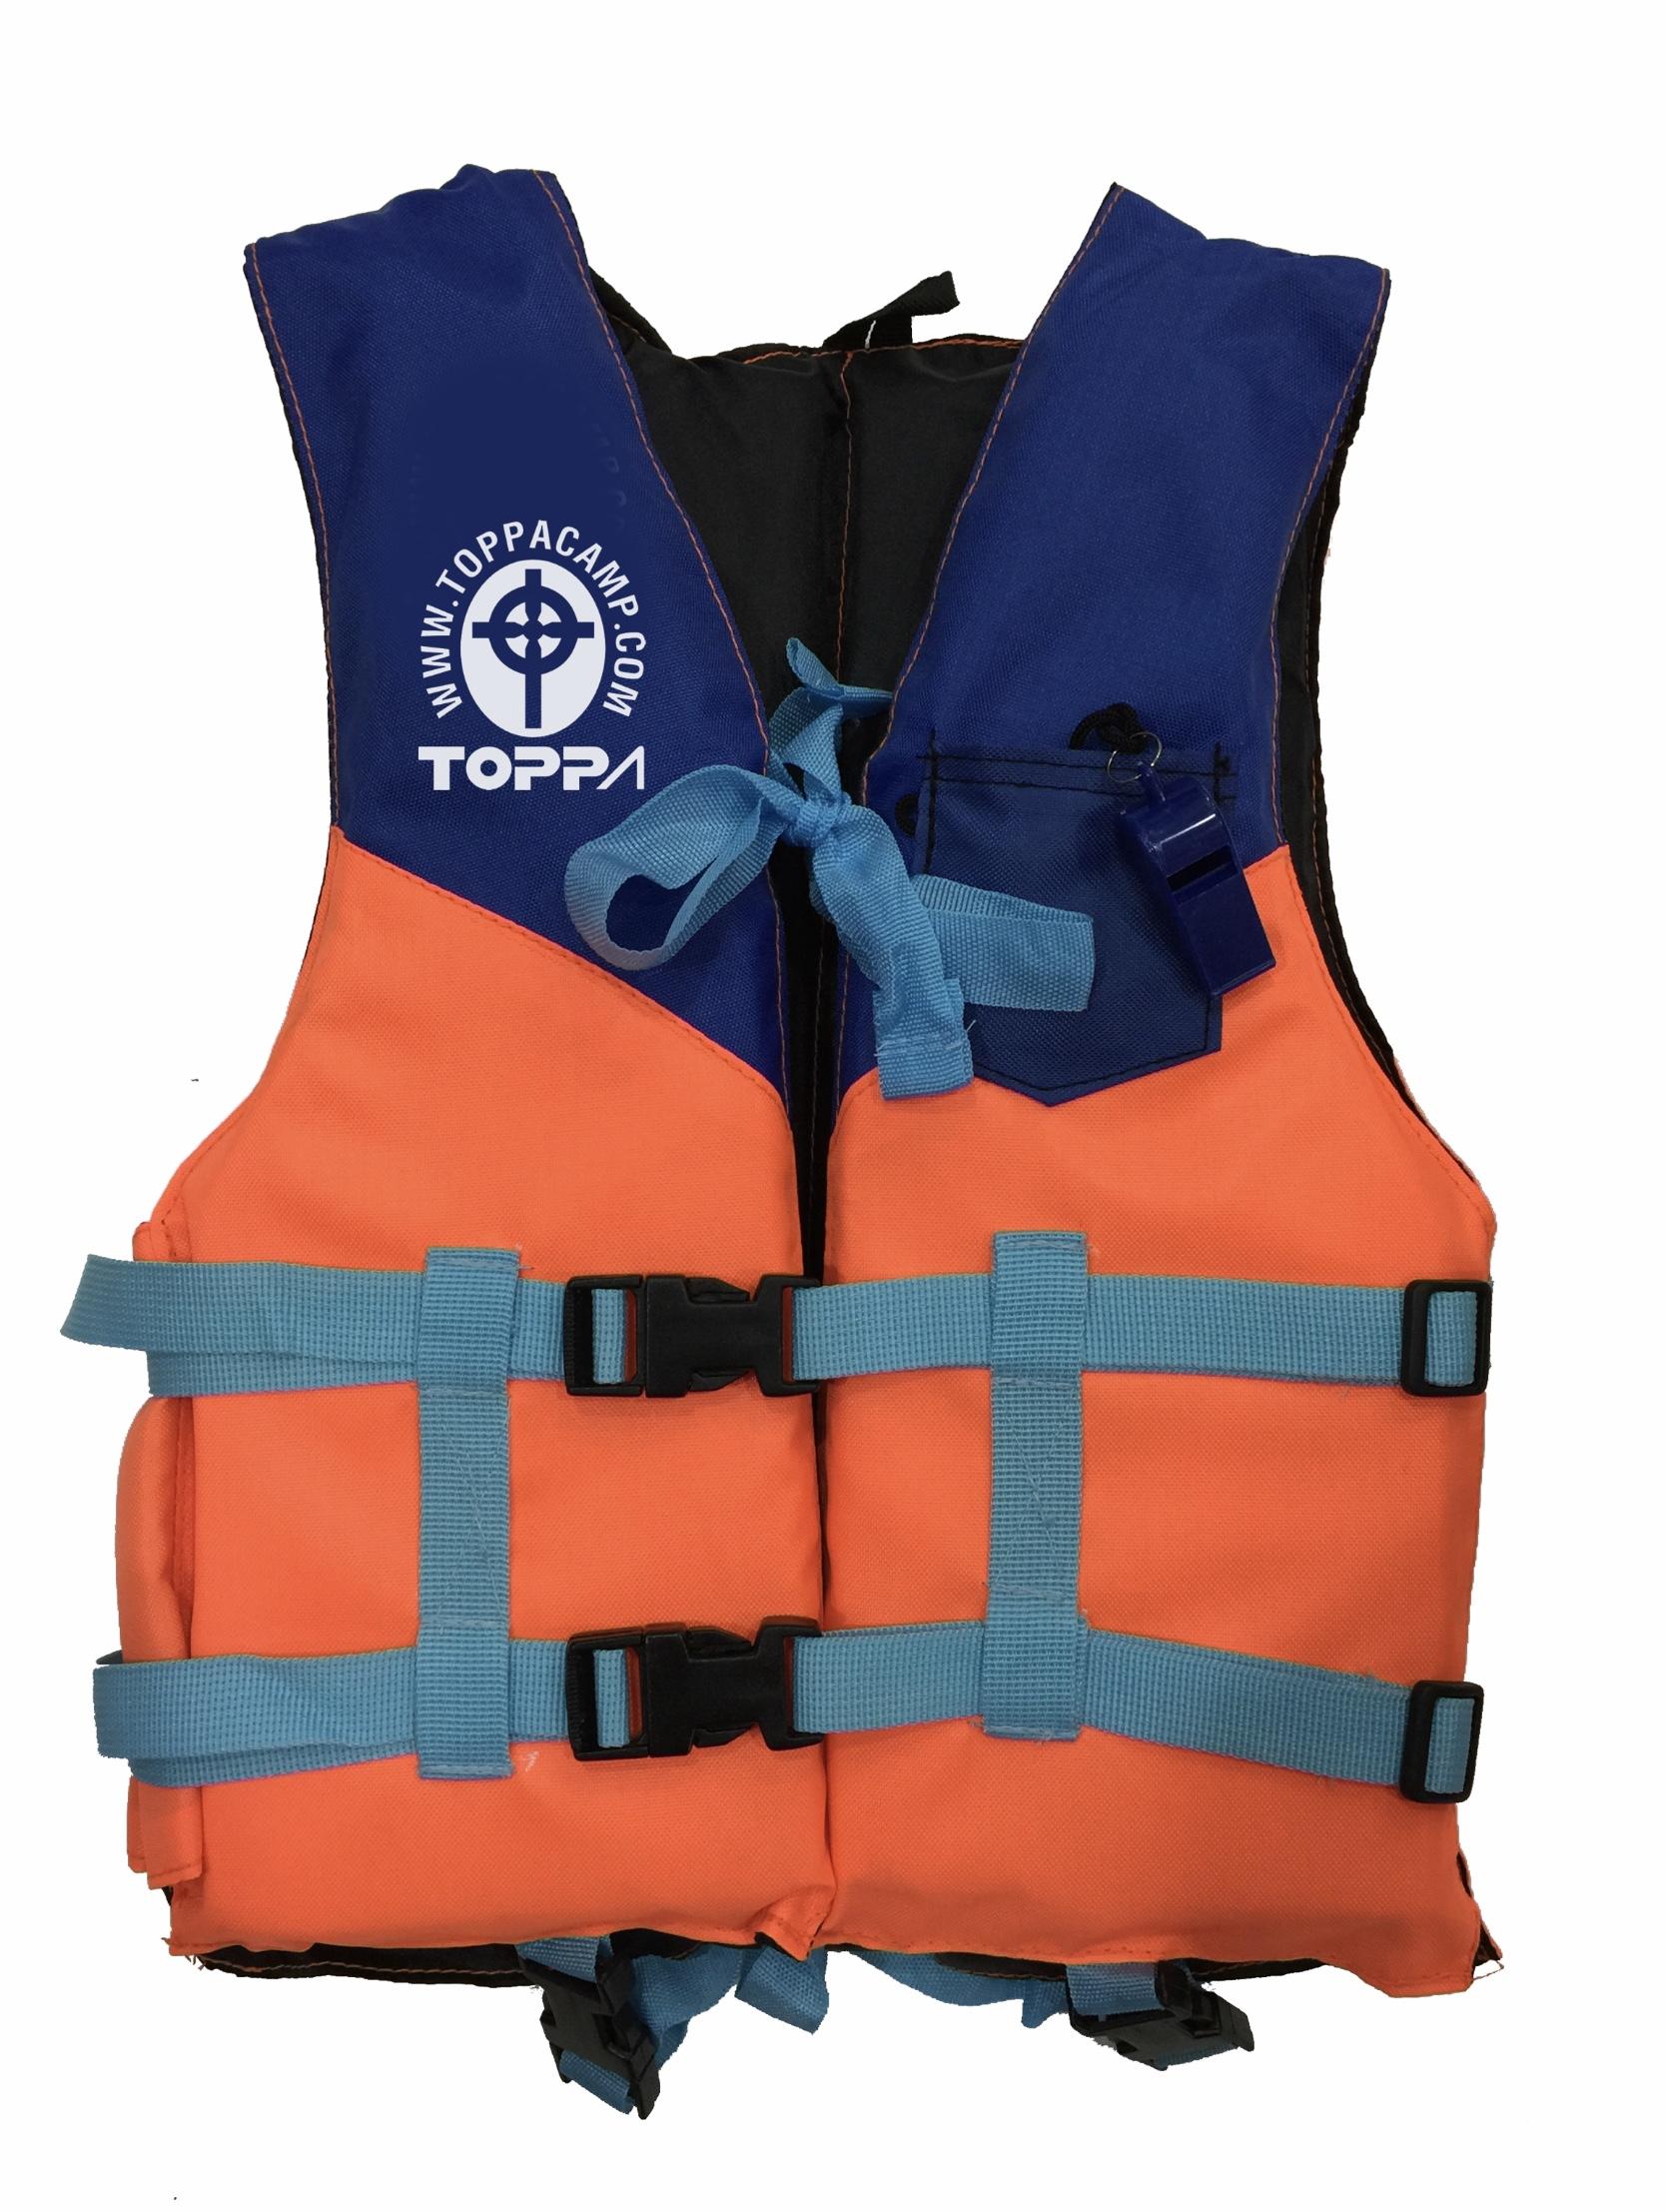 ลด50% เสื้อชูชีพเด็กระดับพรีเมียม TOPPA รุ่น Sea Nemo ชนิดเสื้อพยุงตัว มาตรฐานอุตสาหกรรม สำหรับเด็ก 15-25กก.